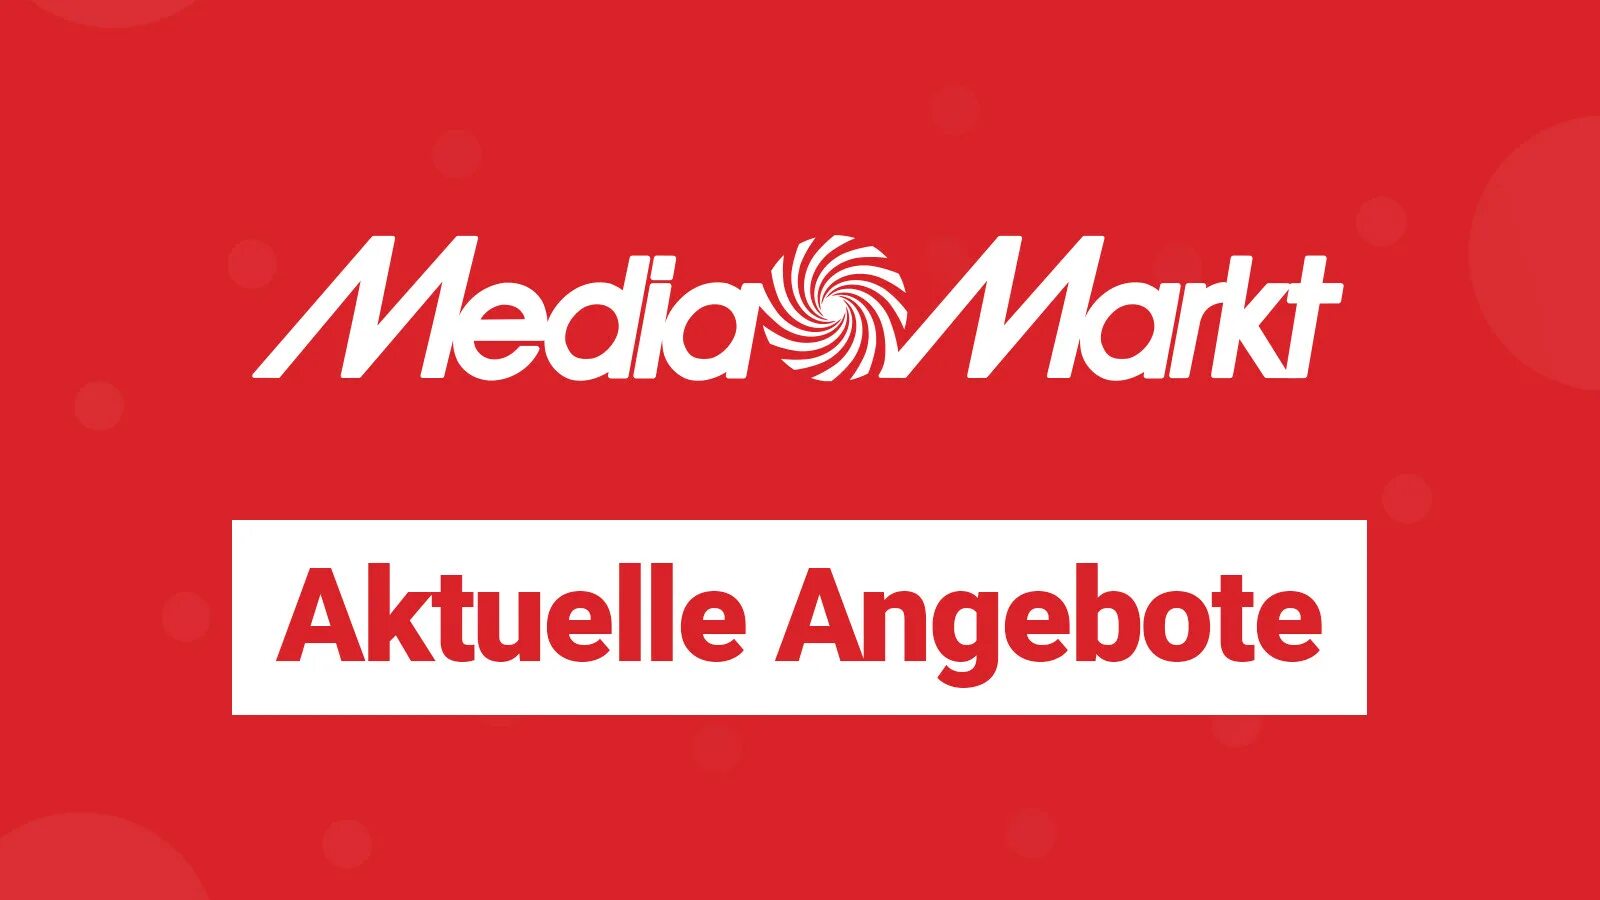 Сайт медиа маркет. MEDIAMARKT. Media Market. Media Markt логотип. Angebote.